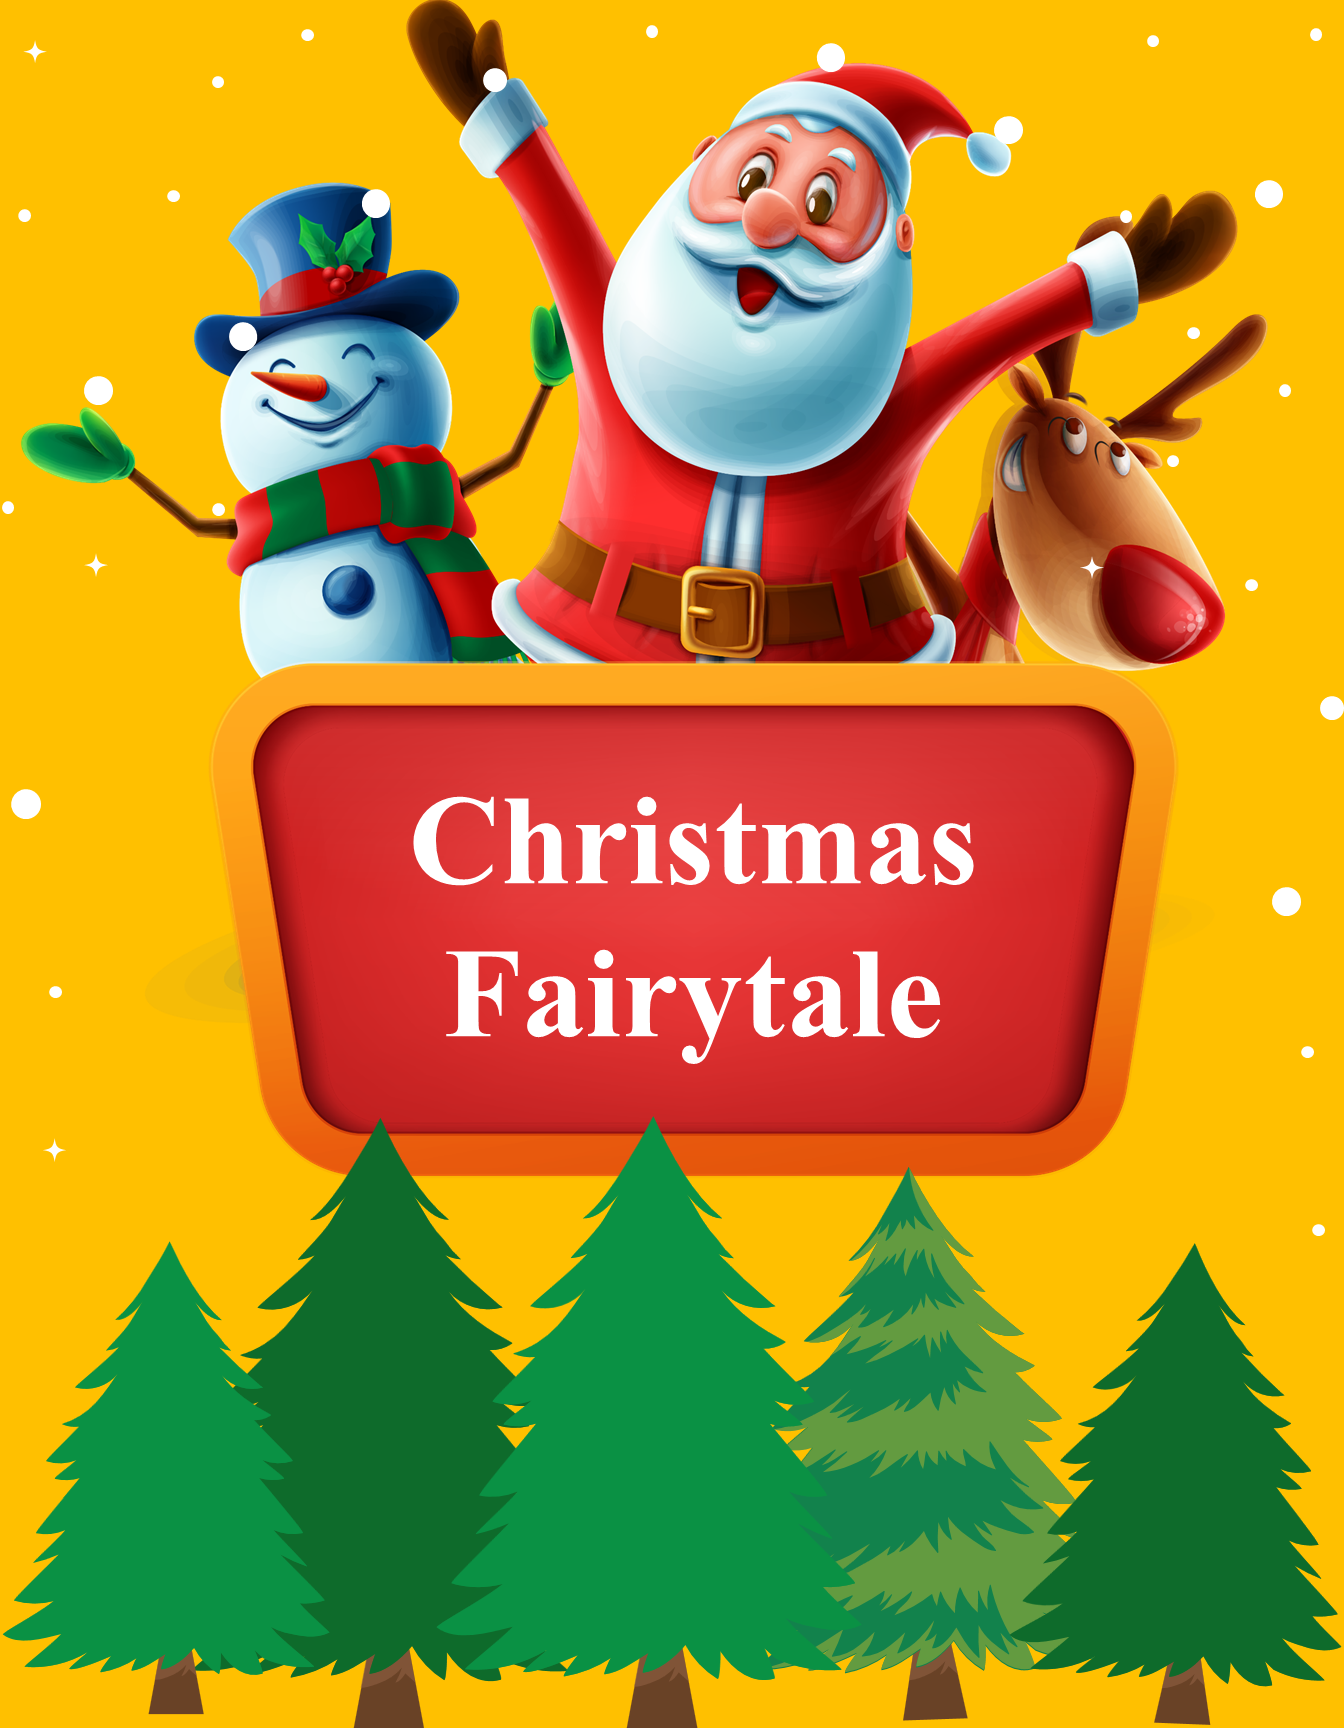 Christmas Fairytale